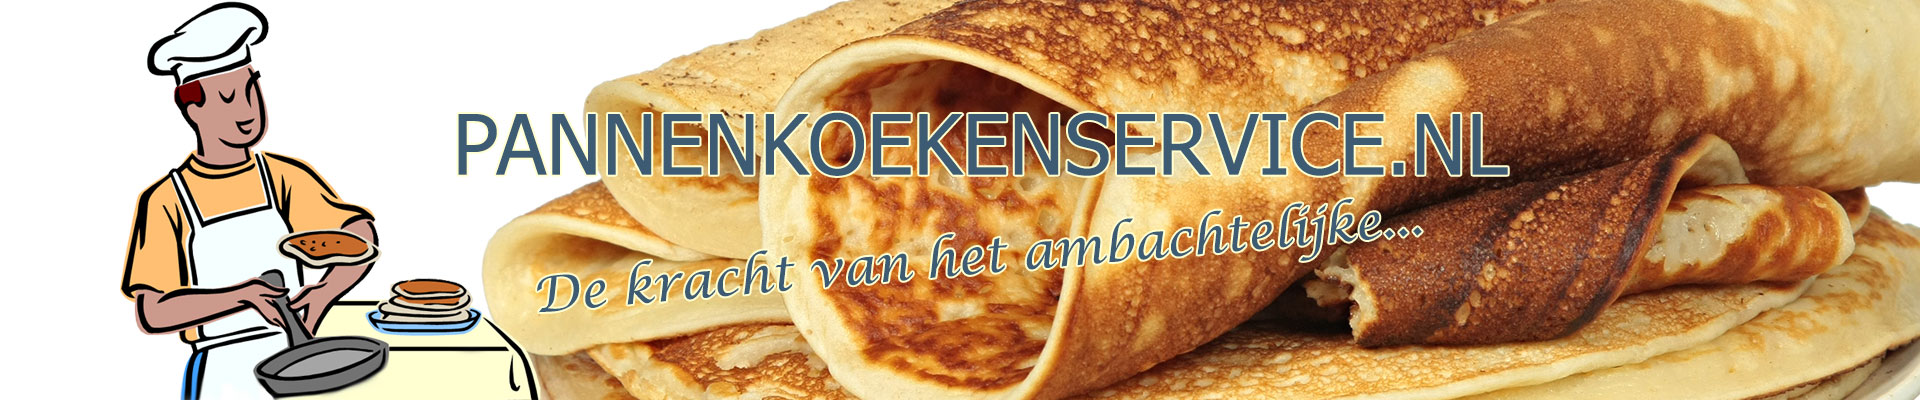 Pannenkoekenservice.nl